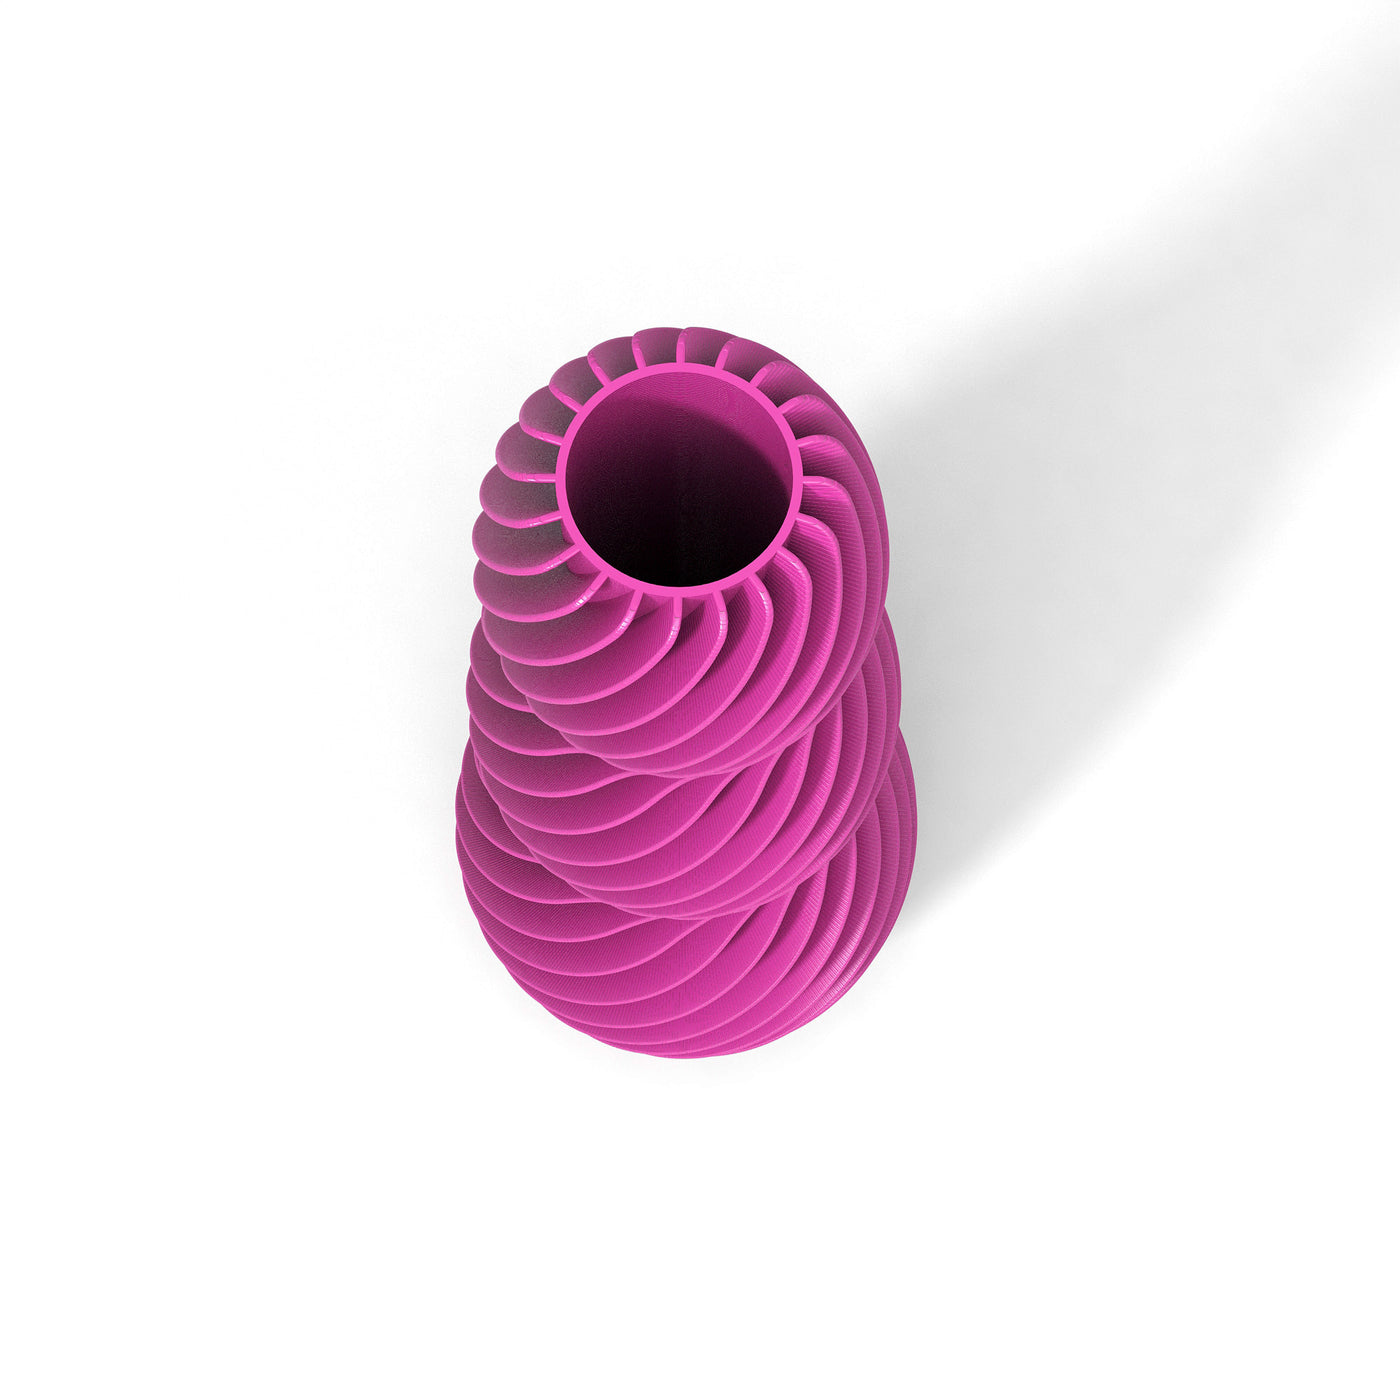 Růžová designová váza 3D print SPIRAL 3 zeshora